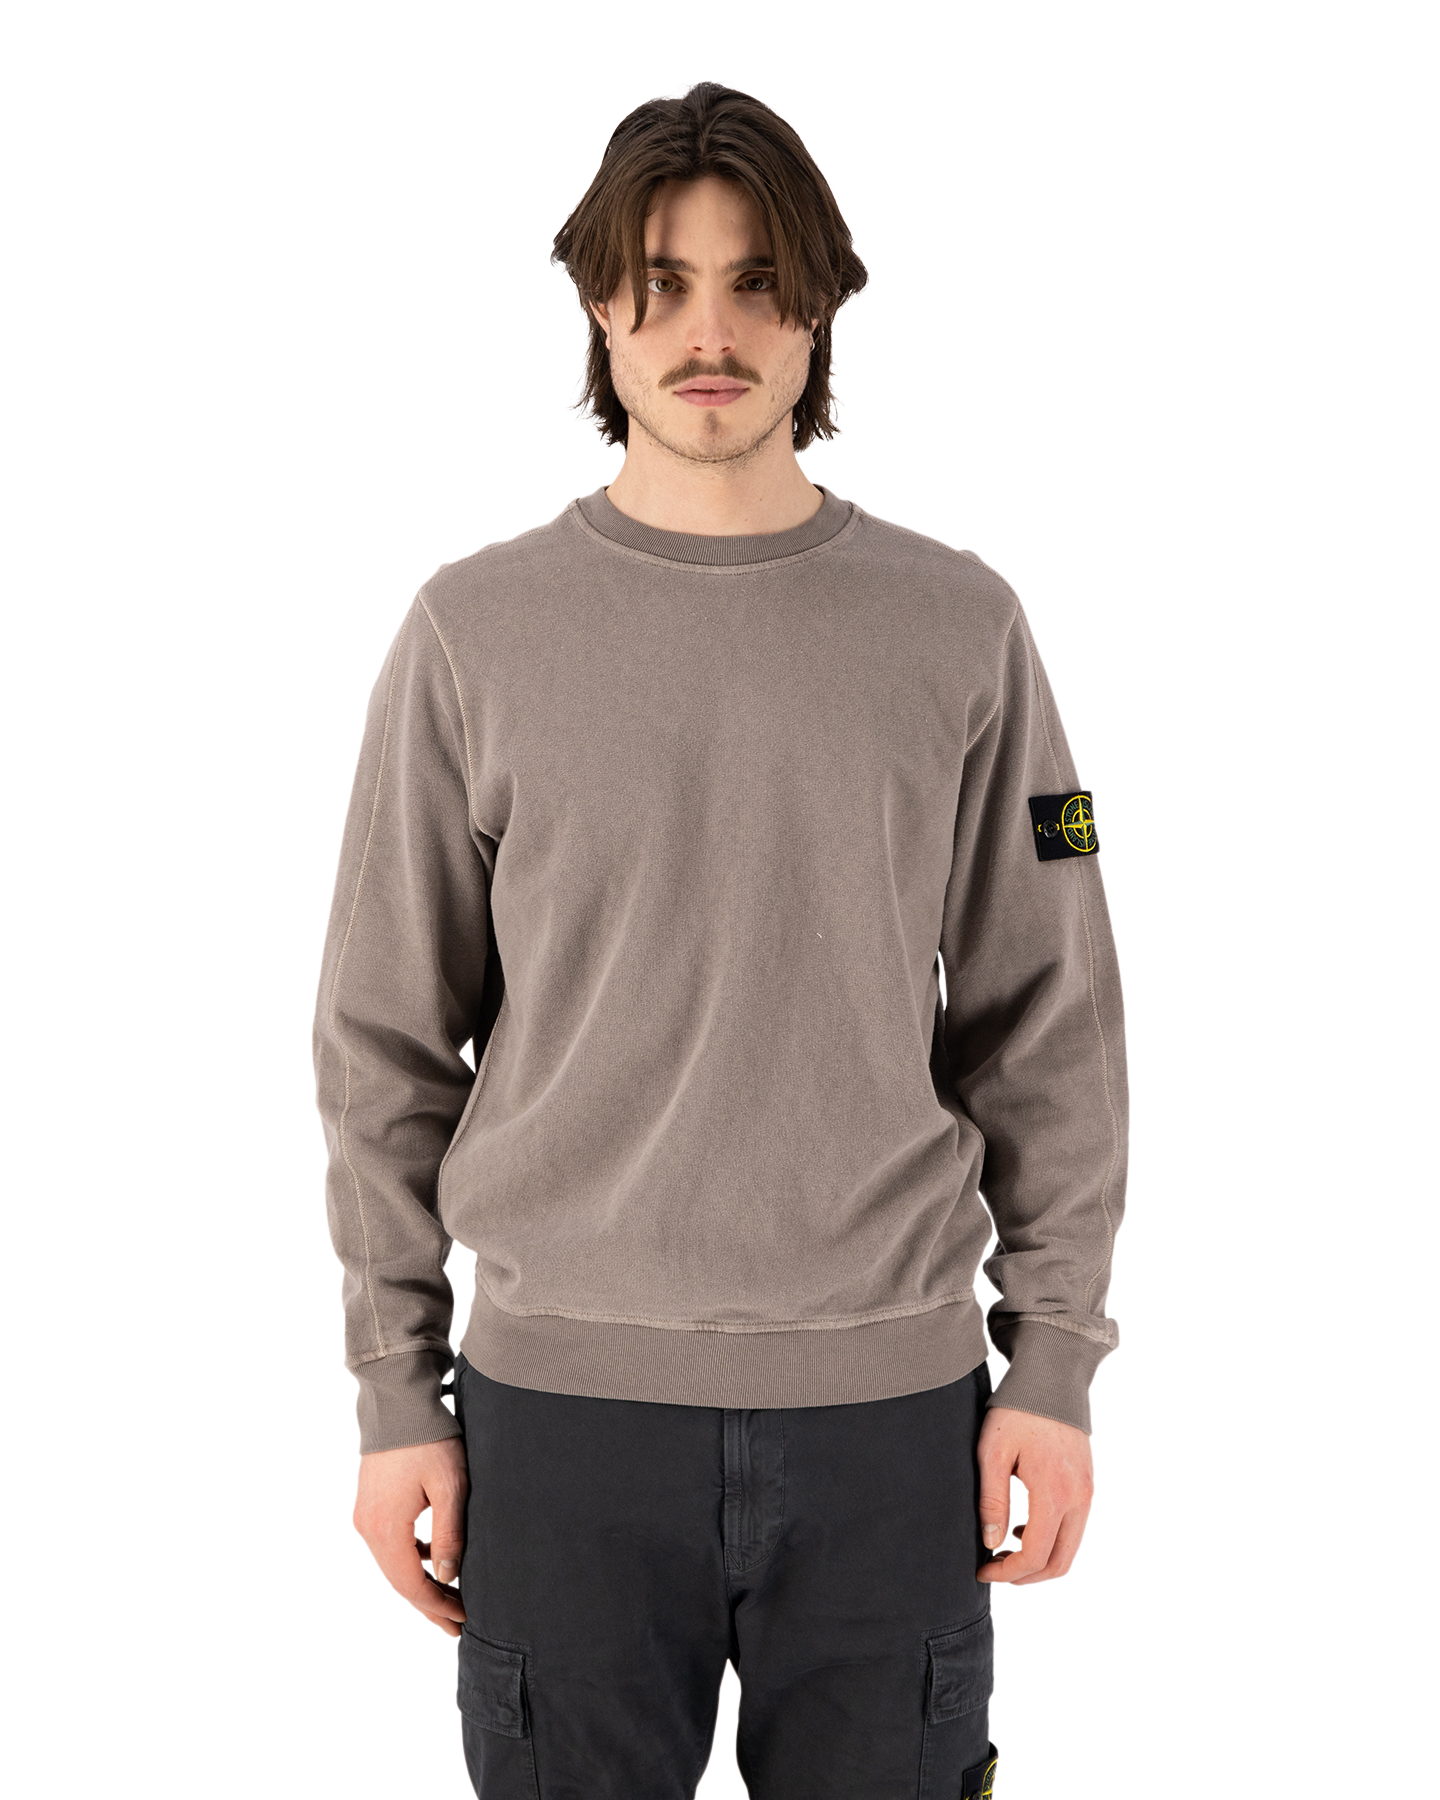 Stone Island 66060 Malfile Fleece Garment Dyed 'Old' Effect Crewneck Sweatshirt GRIJS 4